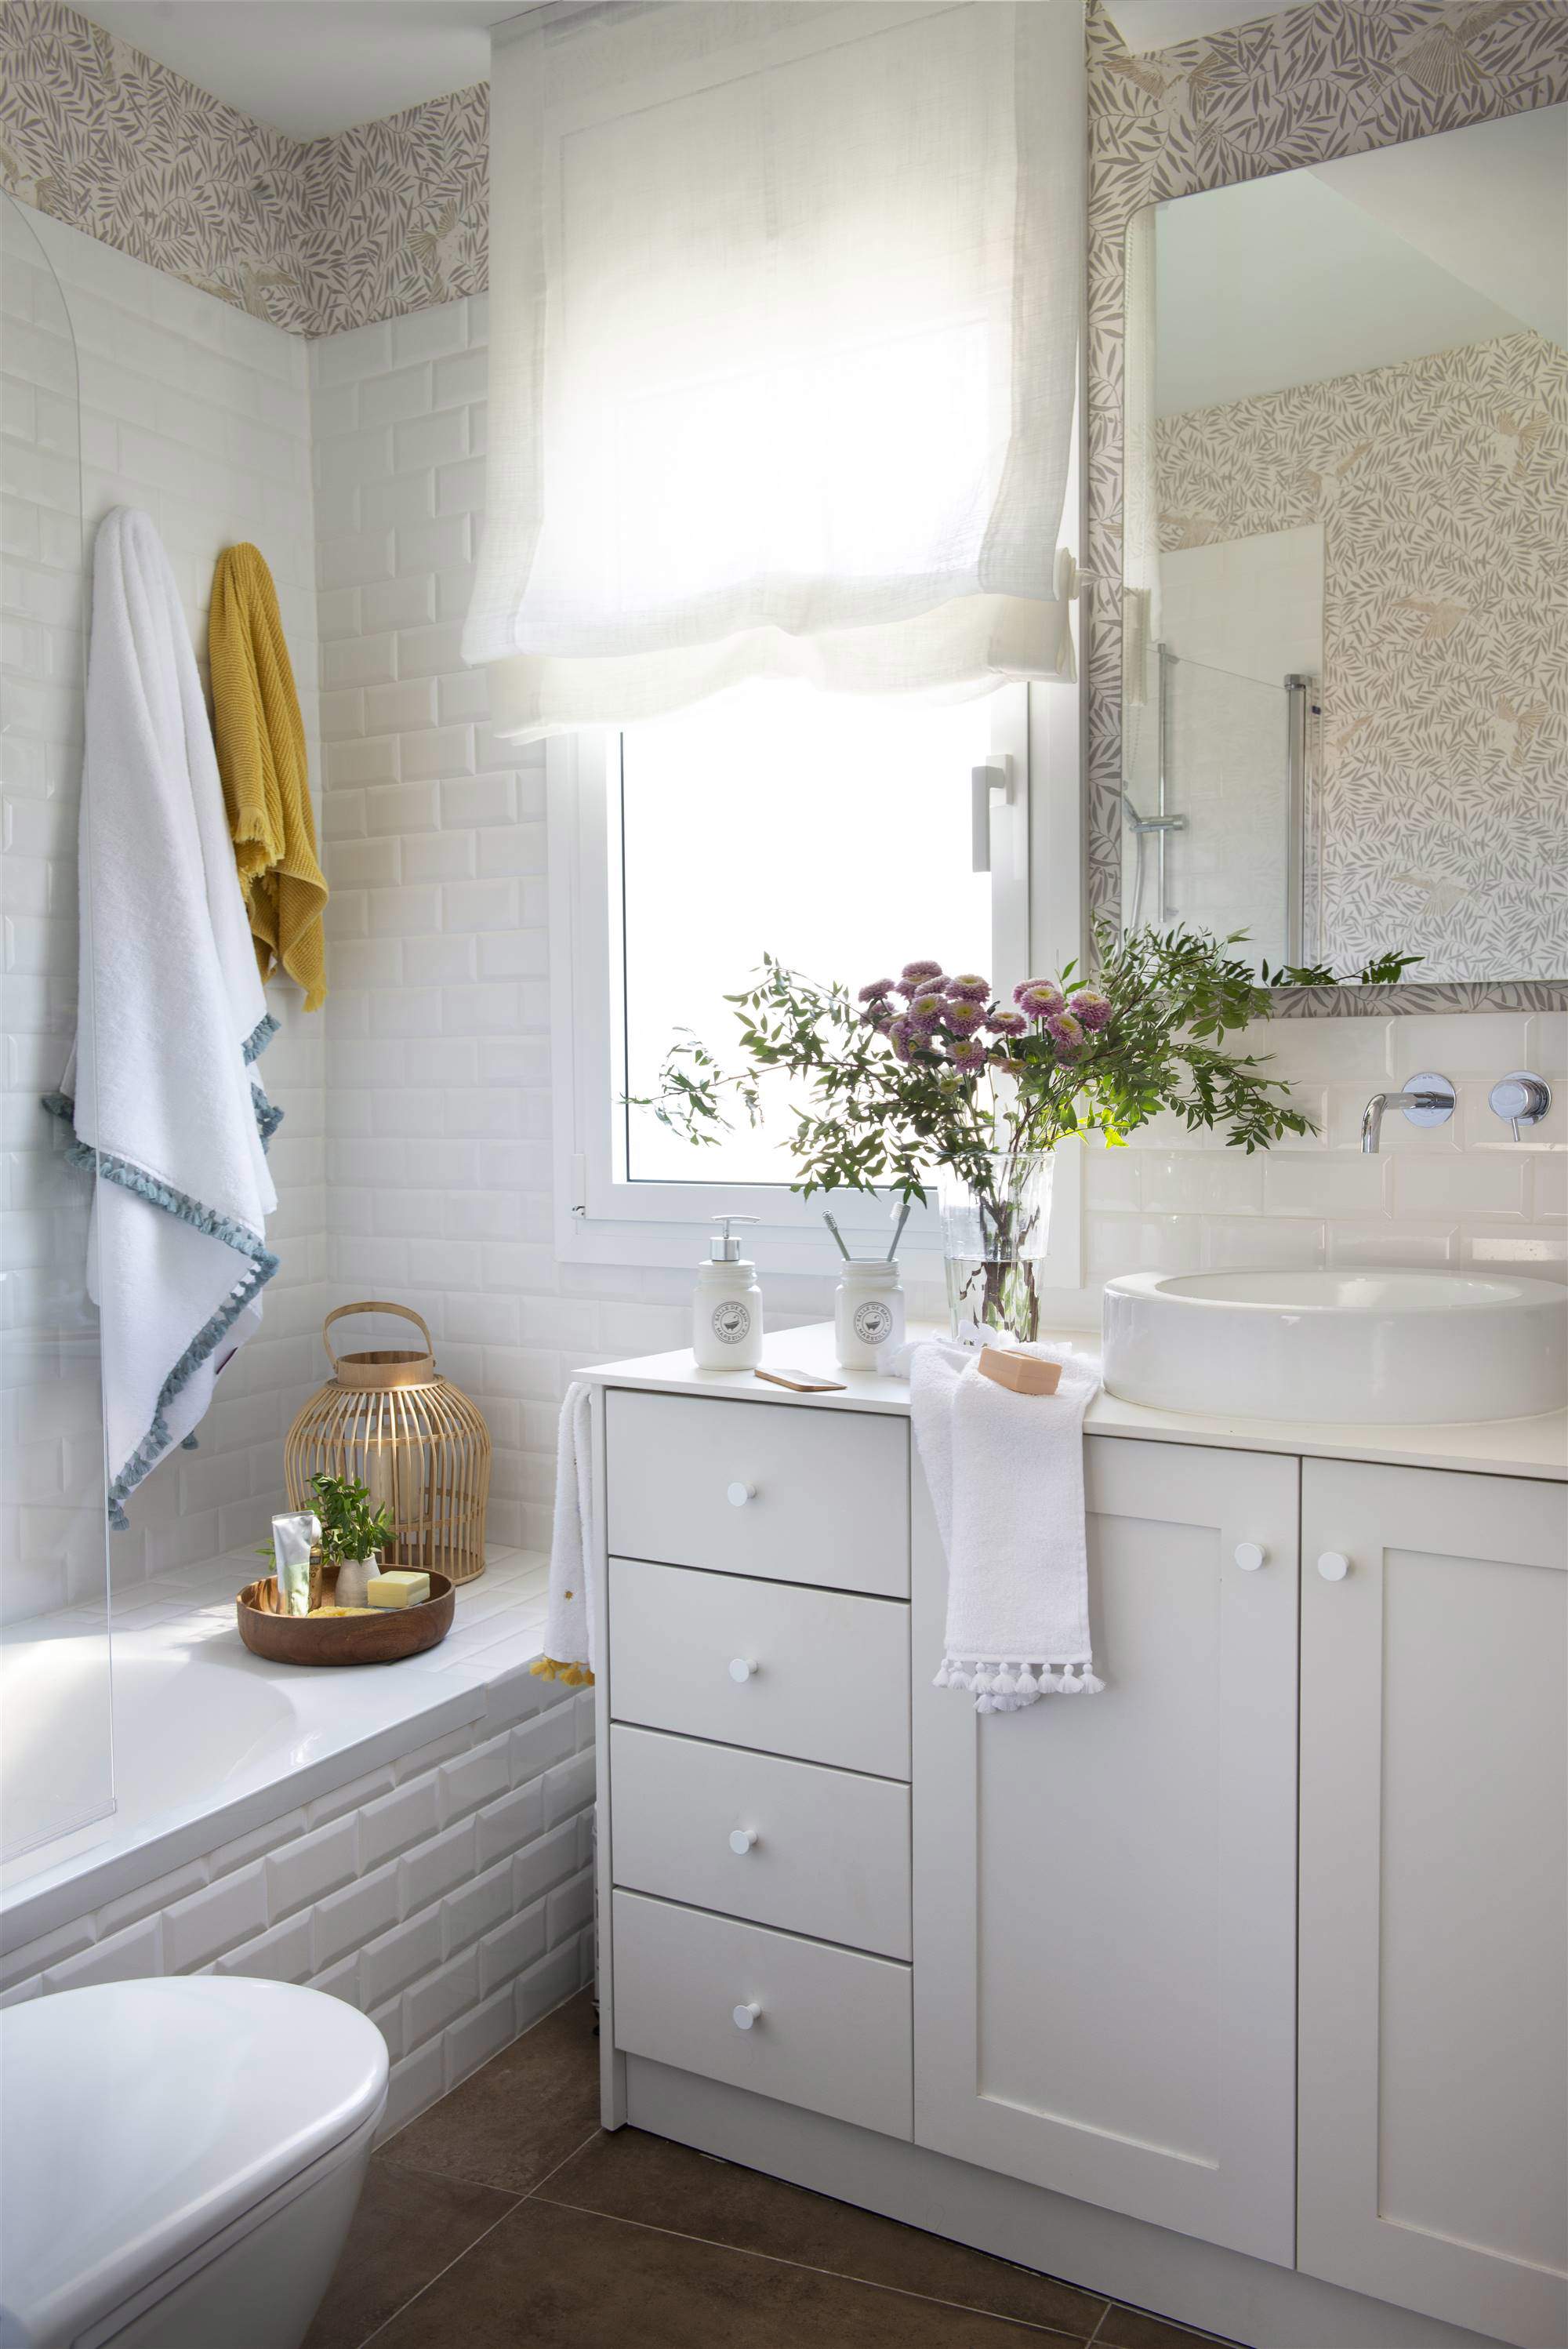 Baño con mueble blanco y papel pintado y azulejos.